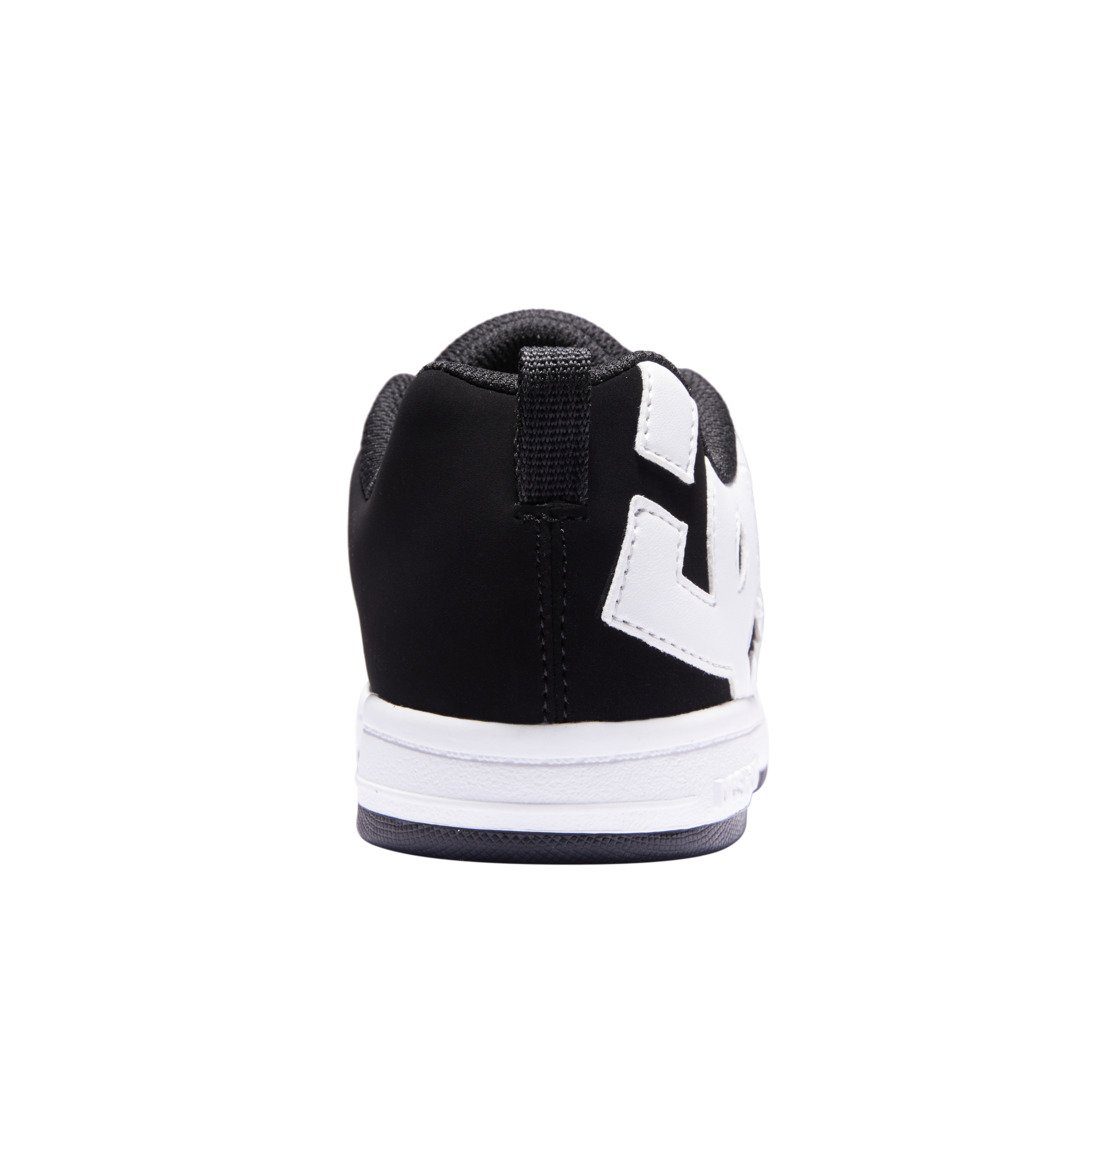 Sneaker Shoes Court Graffik Black/White DC